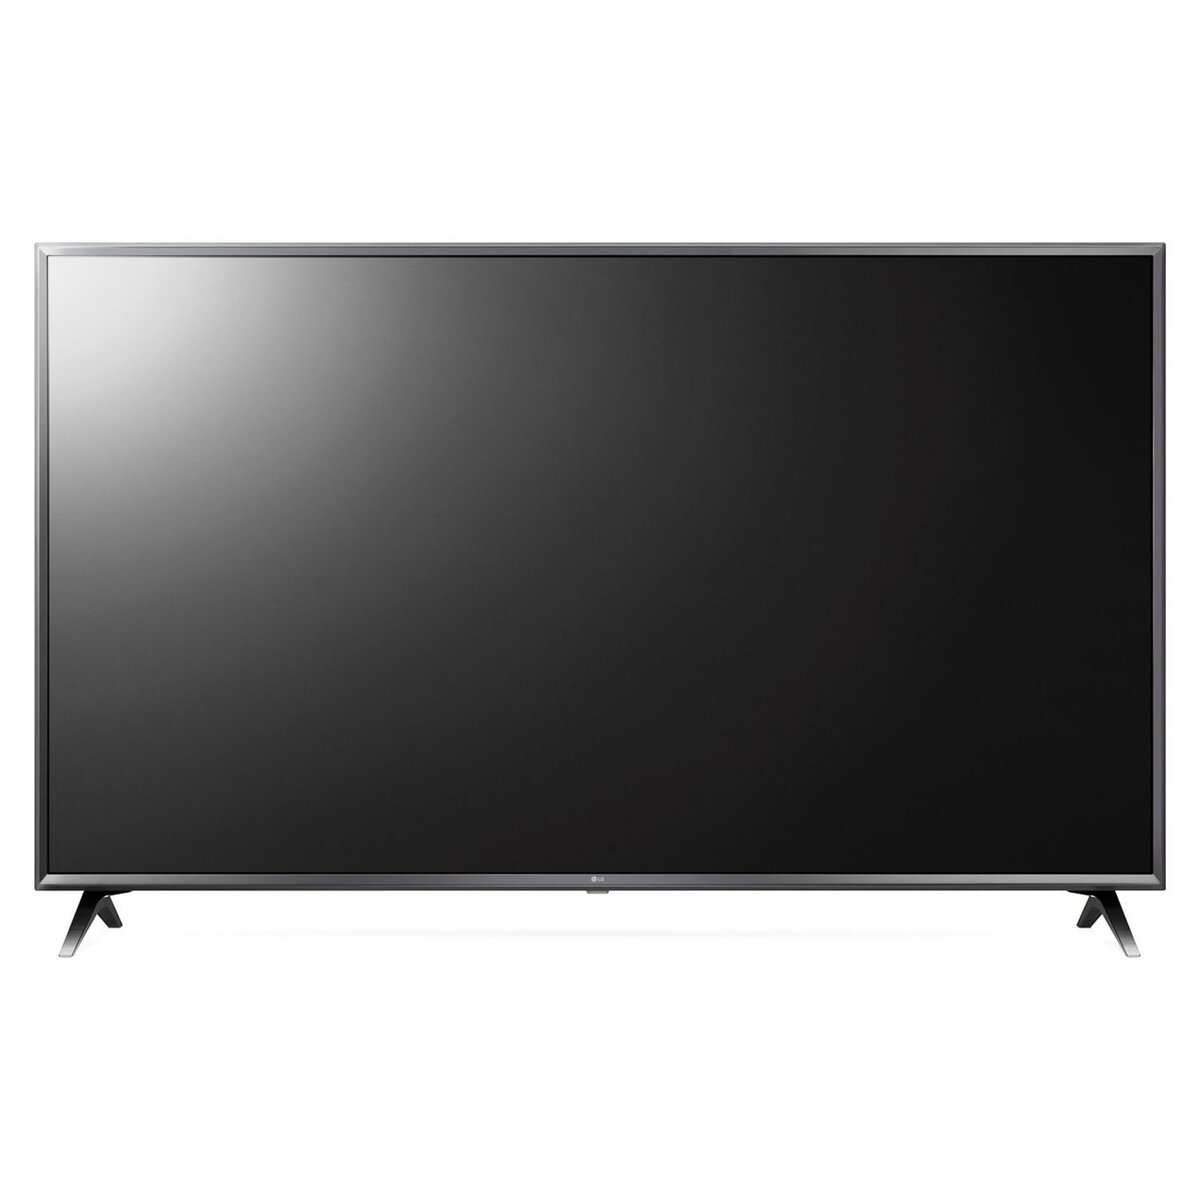 LG 55UK6300 TV LED 4K UHD 139 cm Smart TV